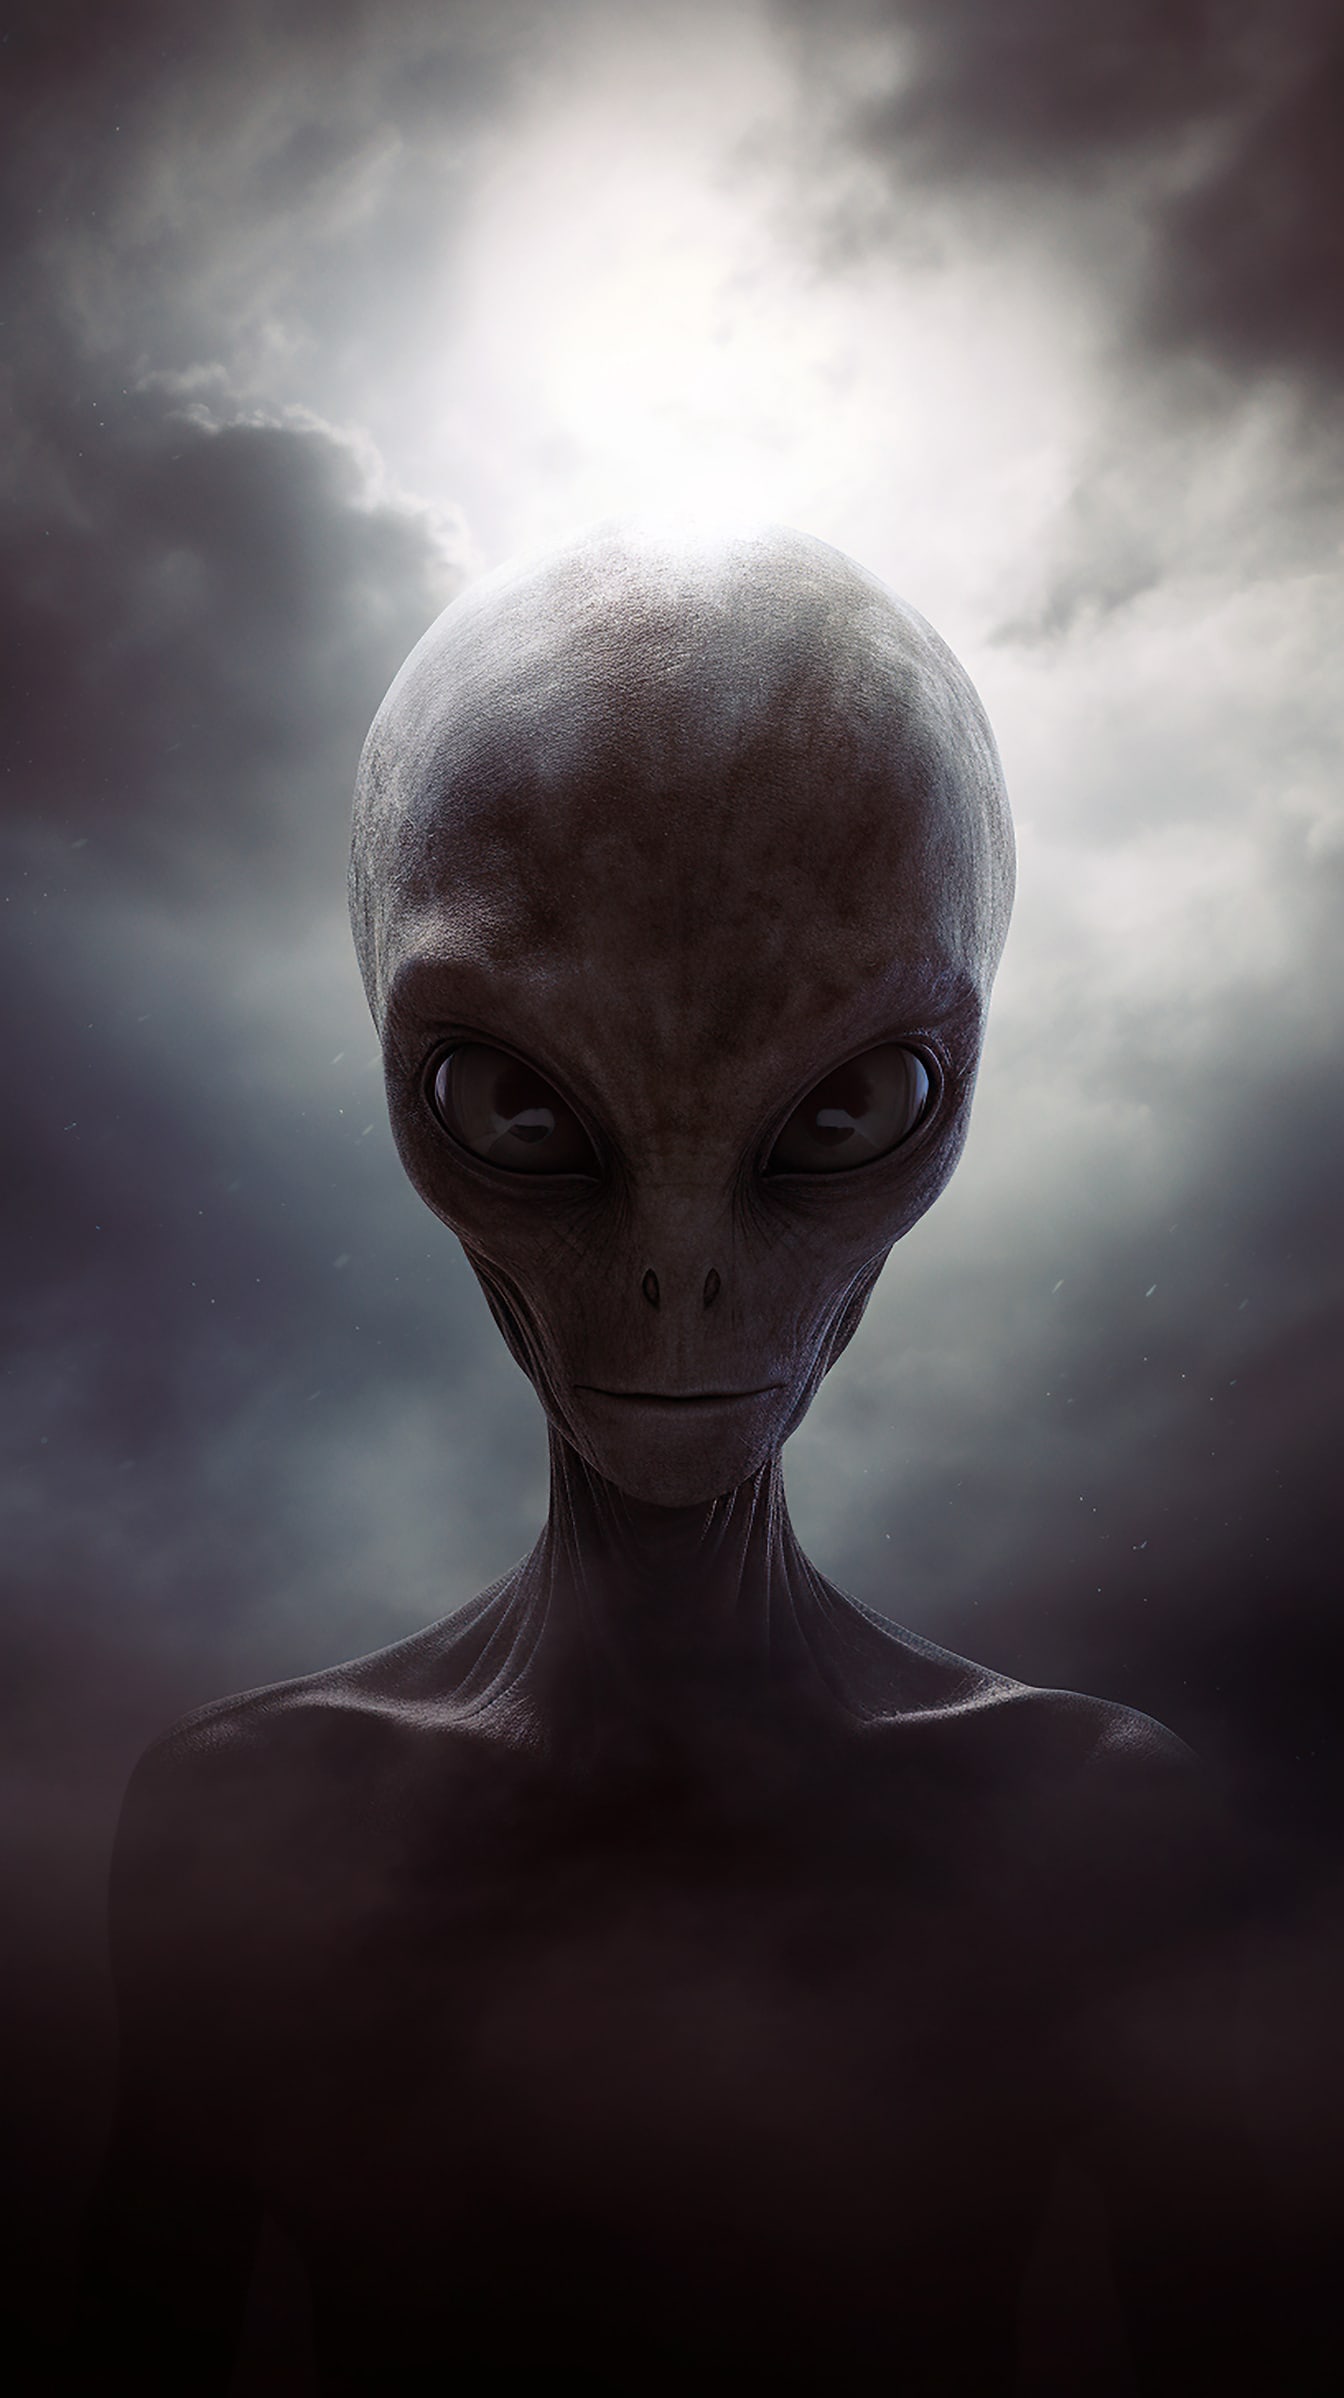 Retrato da criatura alienígena humanoide com pele e olhos cinzentos